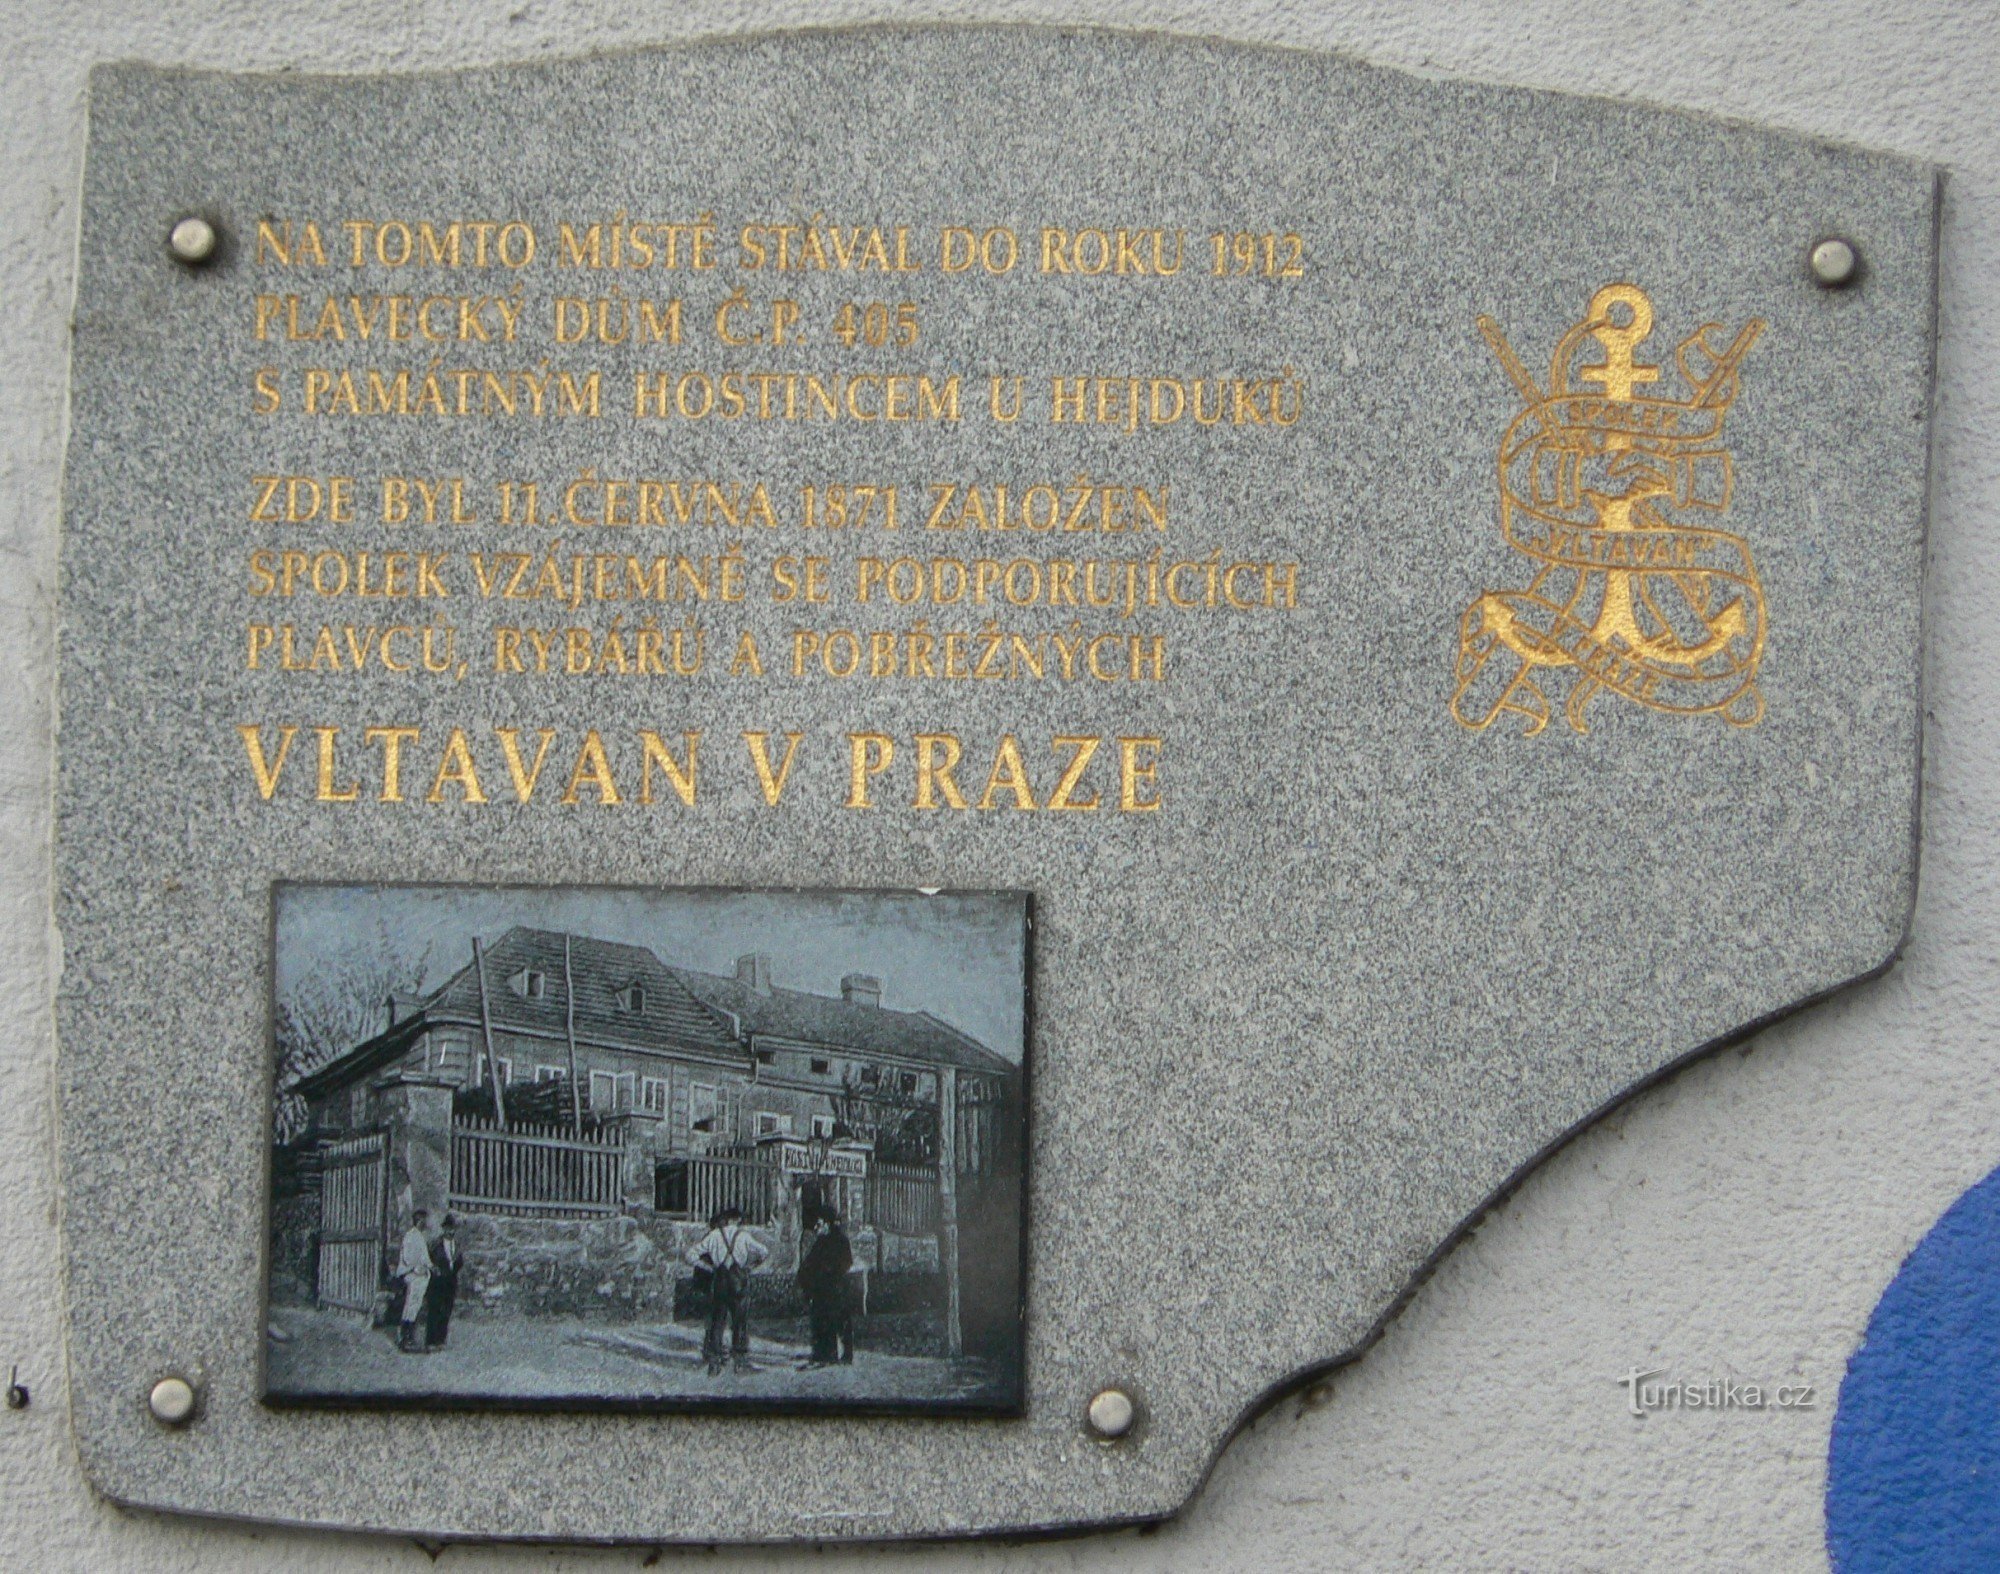 Placa memorial da Associação Vltavan